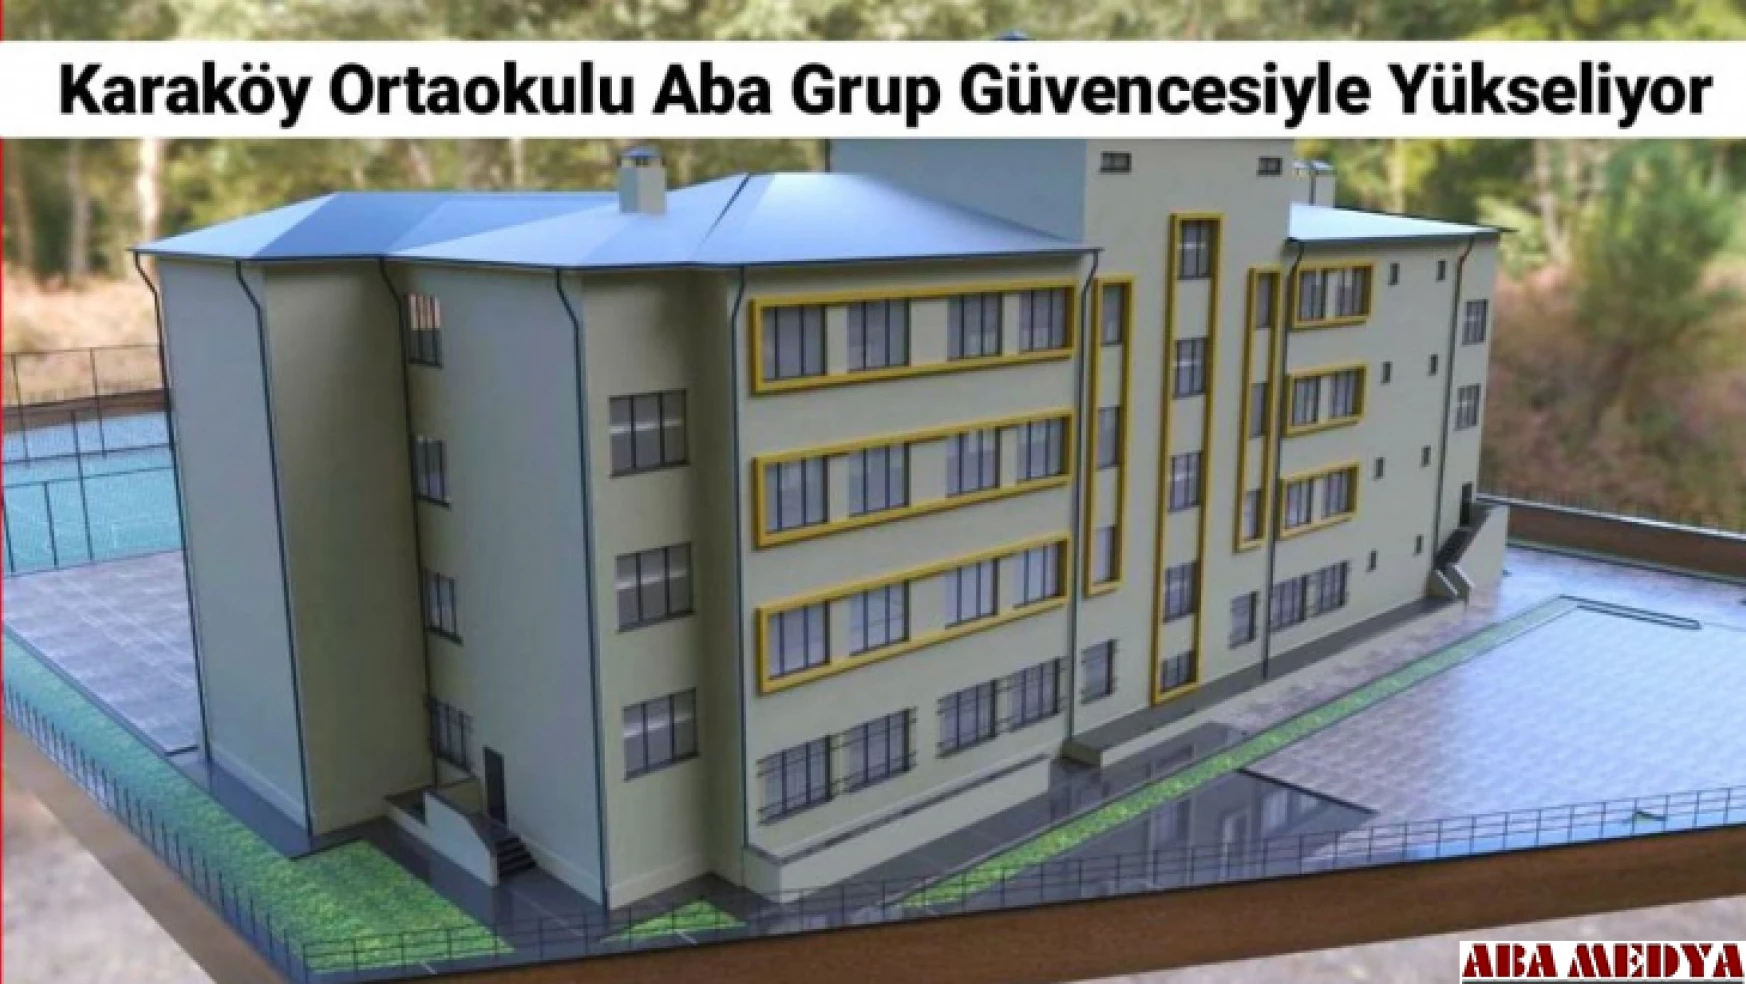 Karaköy Ortaokulu Aba Grup Kalite ve Güvencesiyle Yükseliyor